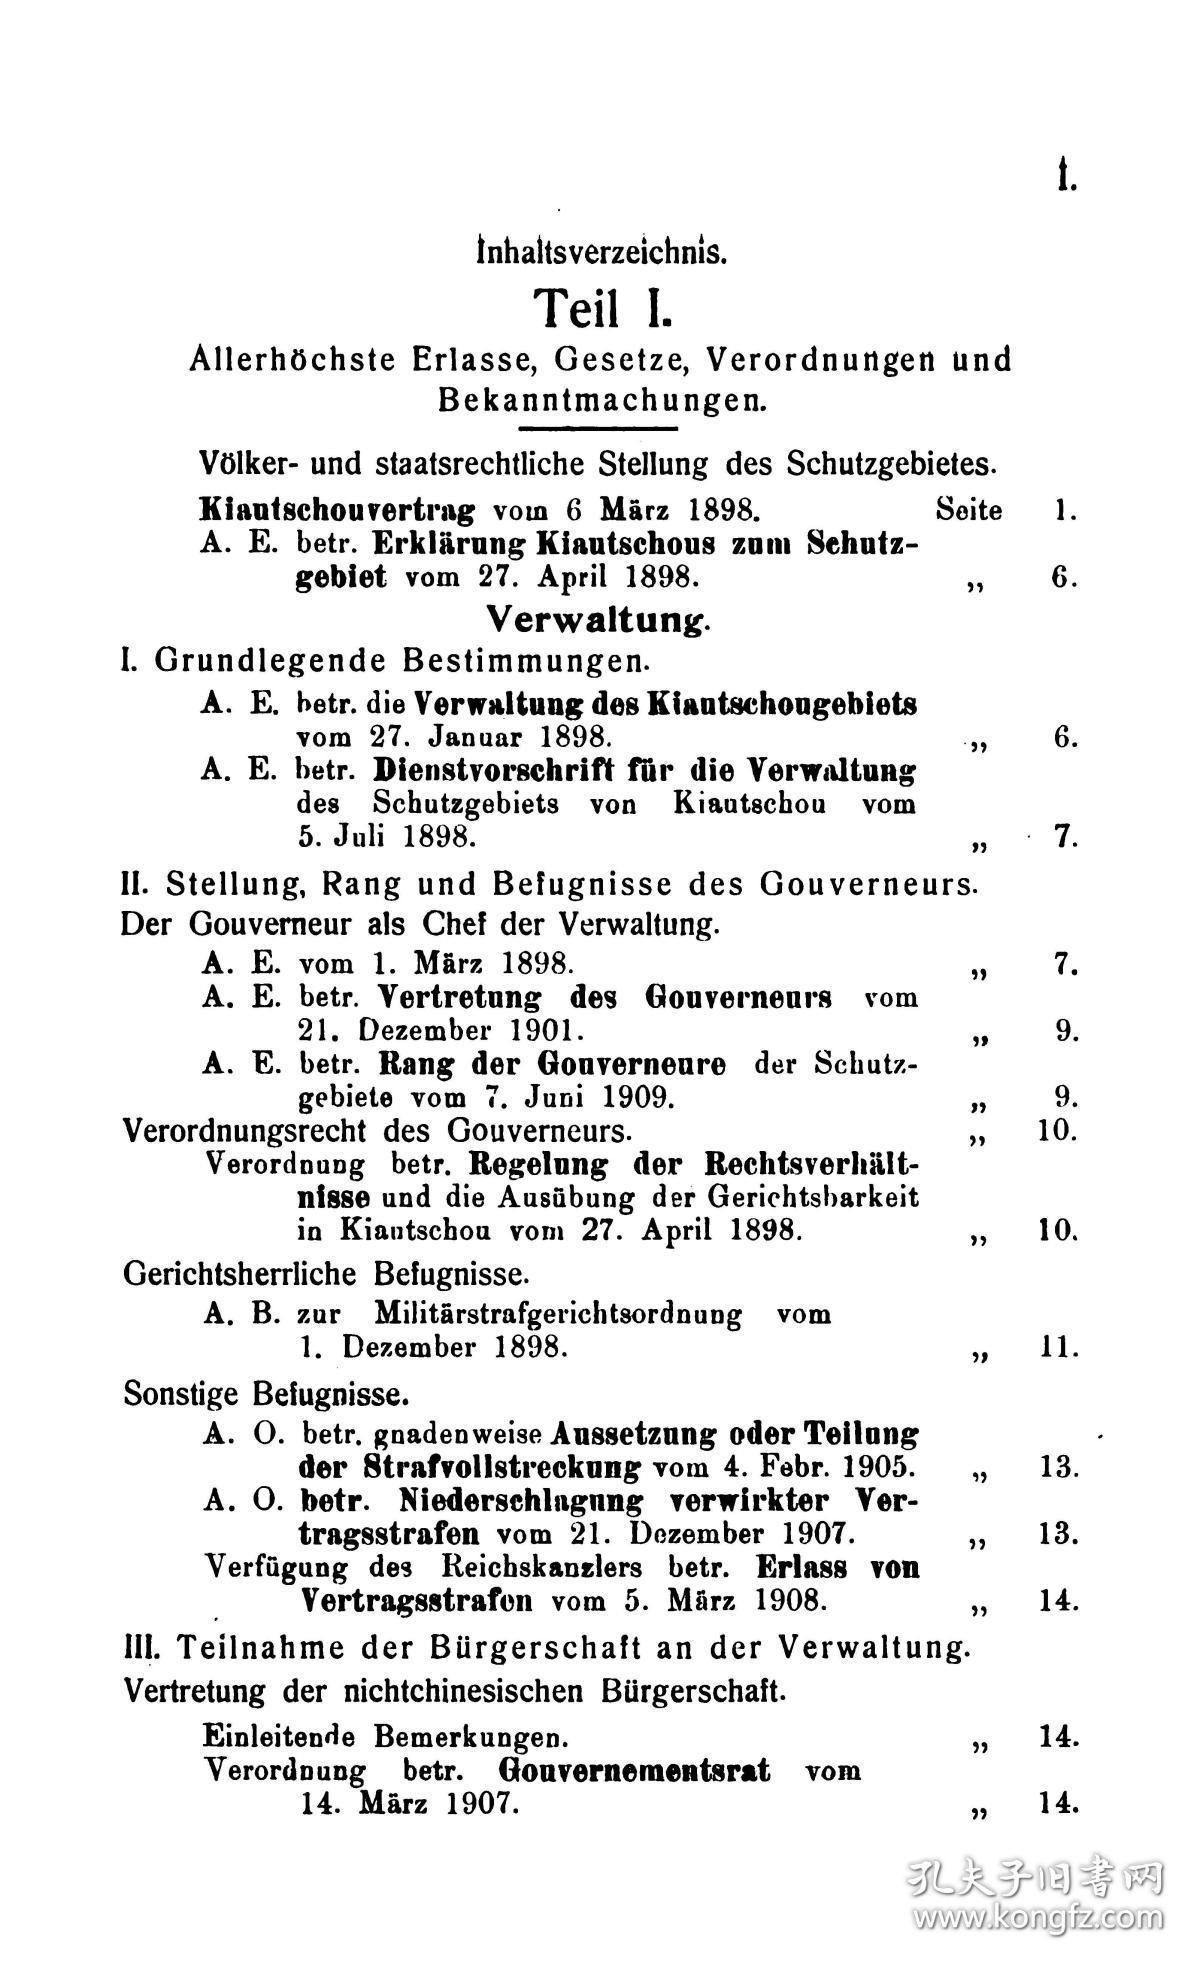 【提供资料信息服务】谟乐 胶州湾指南Handbuch für das Schutzgebiet Kiautschou . hrsg. von F. W. Mohr.  Tsingtau . Deutsch-Chinesischer Druckerei und Verlagsanstalt, W. Schmidt, 1911.青岛 1911板  无装订